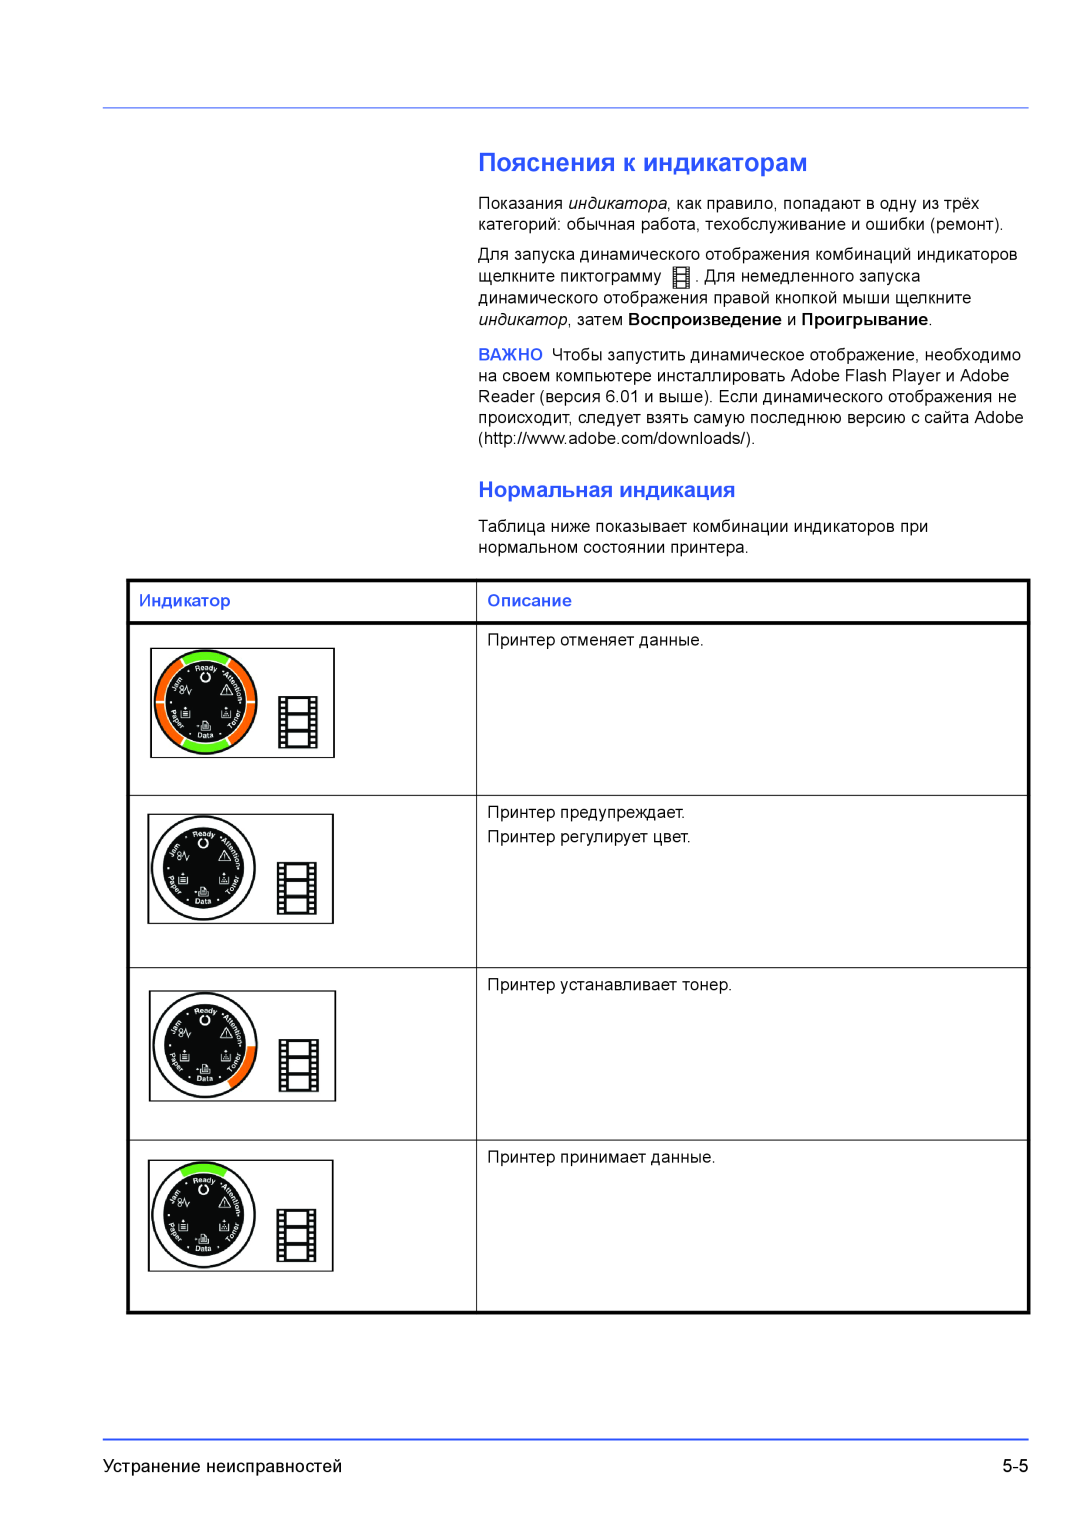 Kyocera FS-1100, FS-1300D manual Пояснения к индикаторам, Нормальная индикация, Индикатор, Описание 